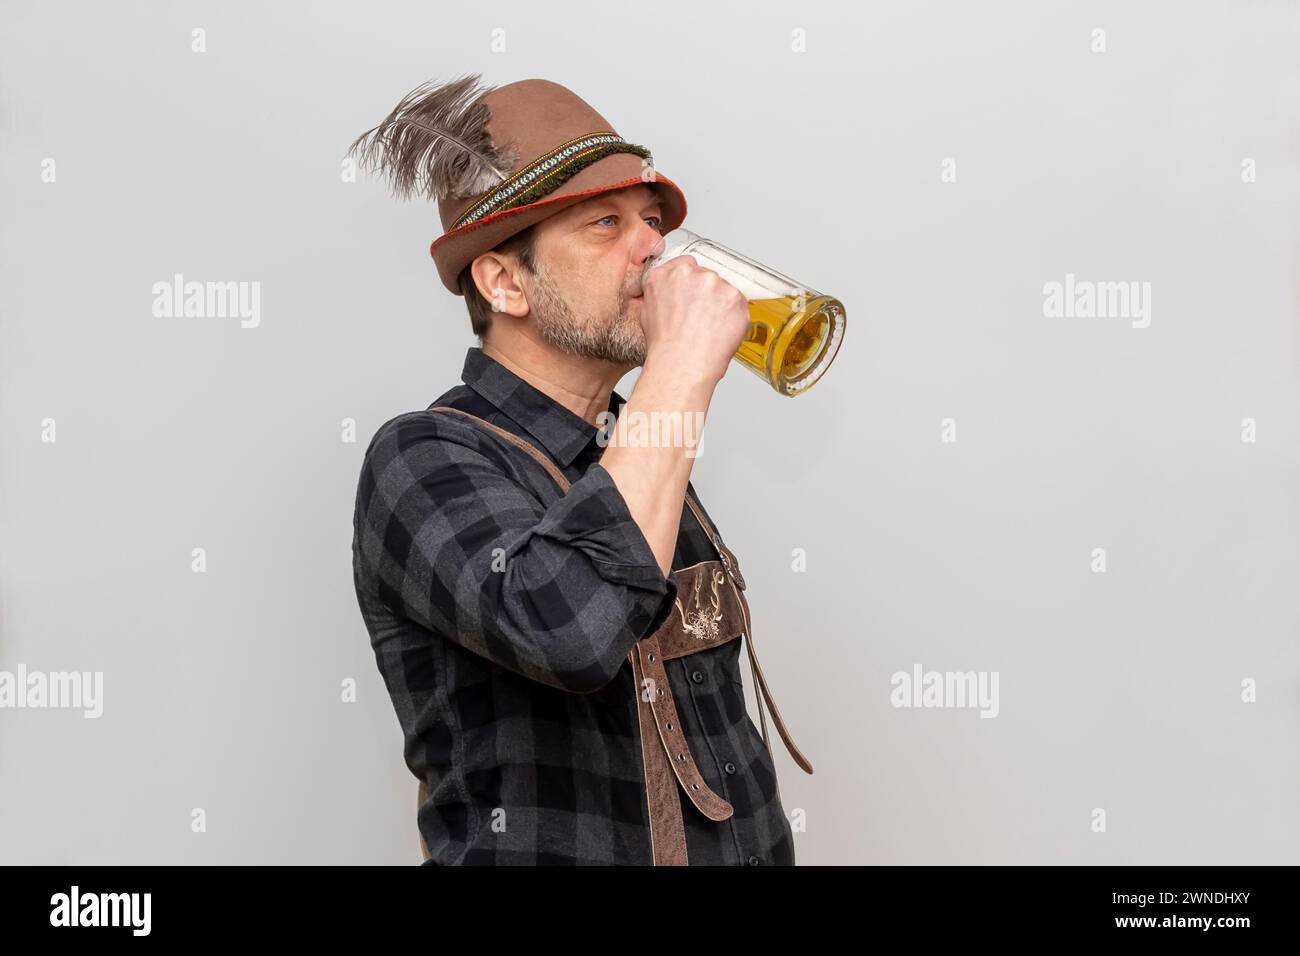 L'anziano barbuto in cappello vuole bere un bicchiere di birra con la schiuma, festival della birra in Austria e Germania. Foto Stock